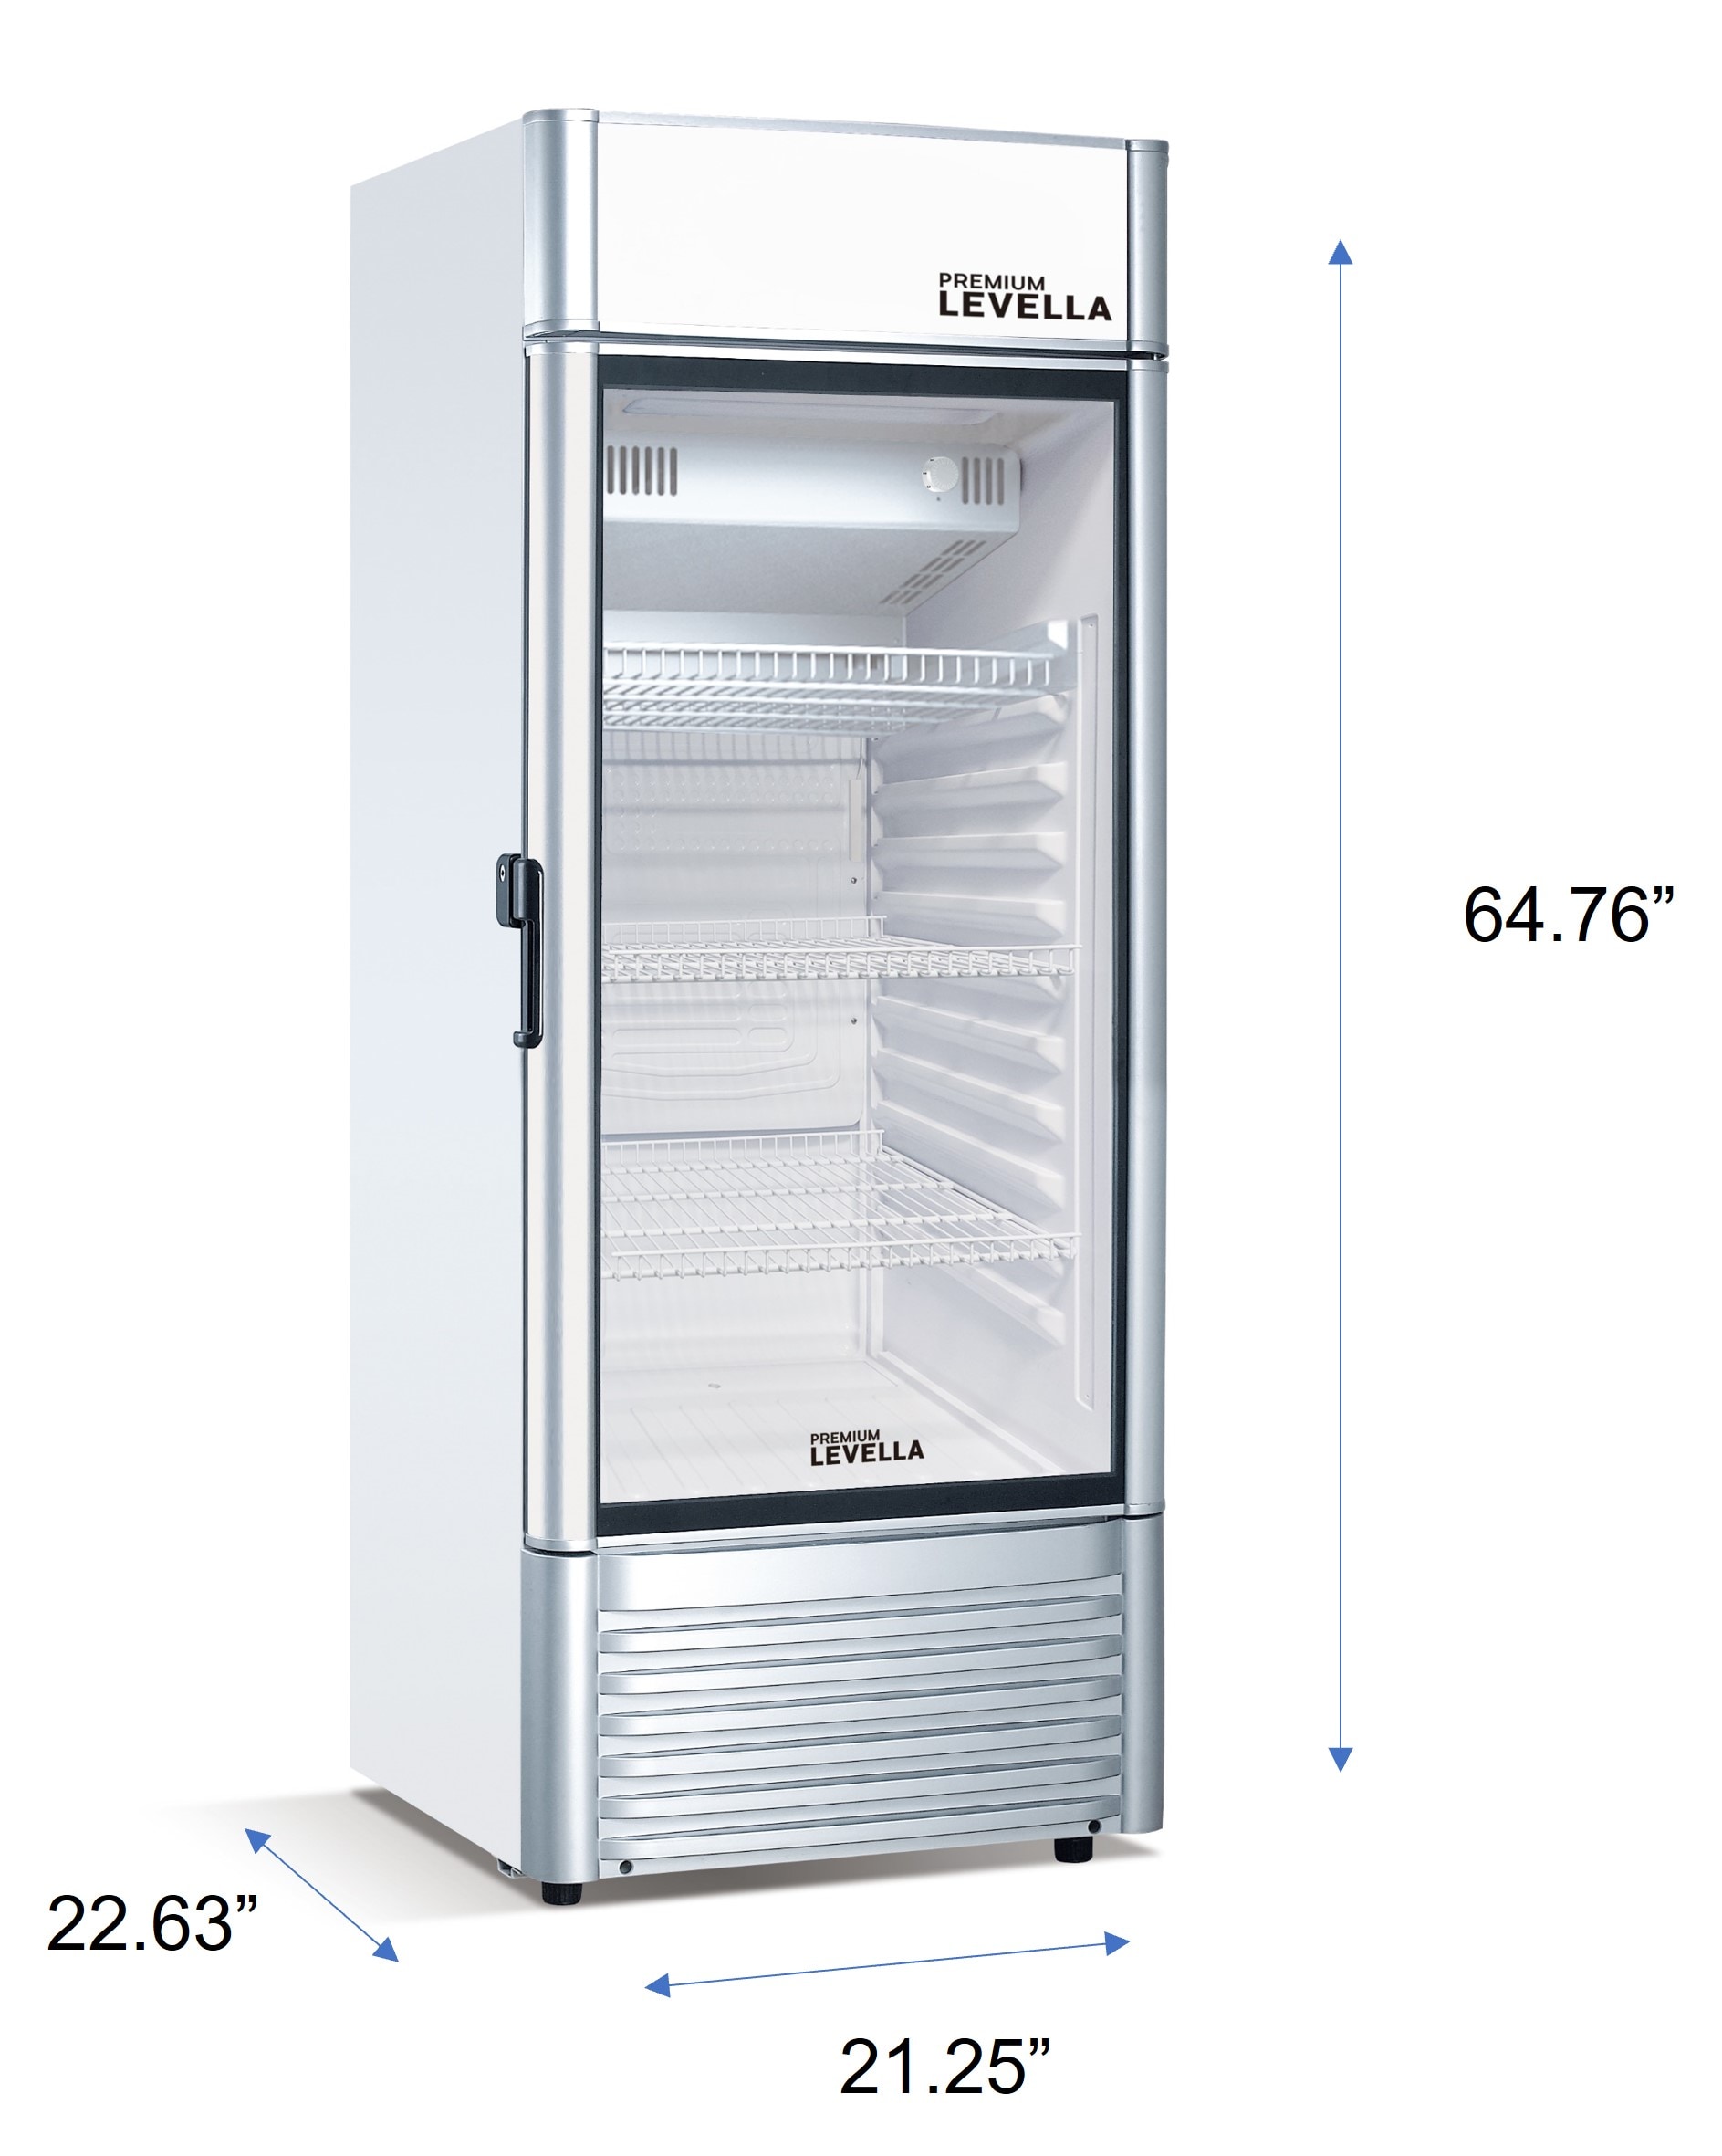 Commercial Refrigerator Single Glass Door Display Freezer Beer